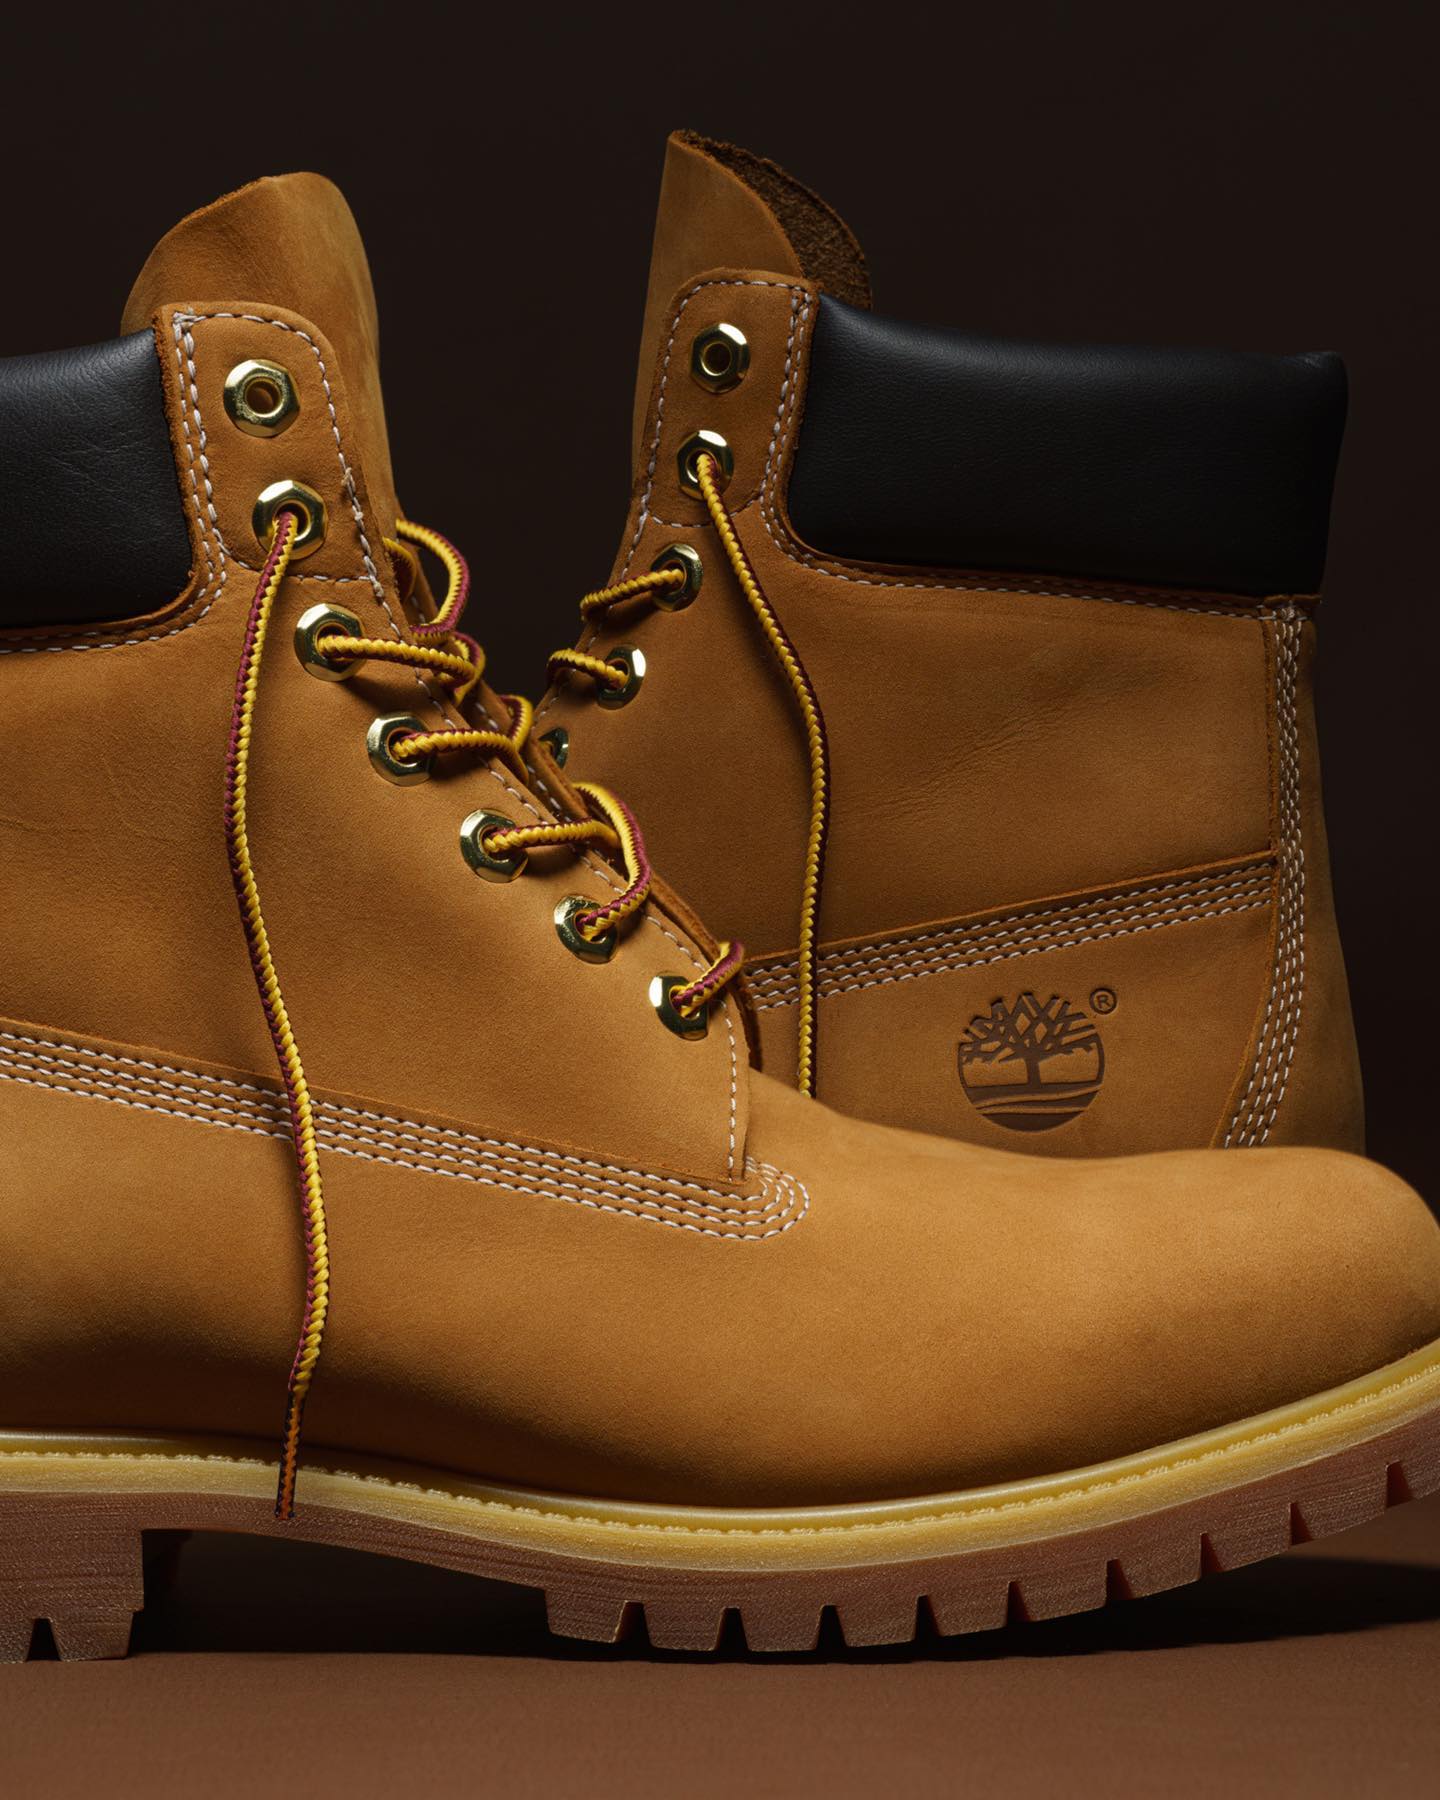 Yellow Boots // 
המגפיים הקלאסיים של טימברלנד 💛
עכשיו באתר ובחנויות >>